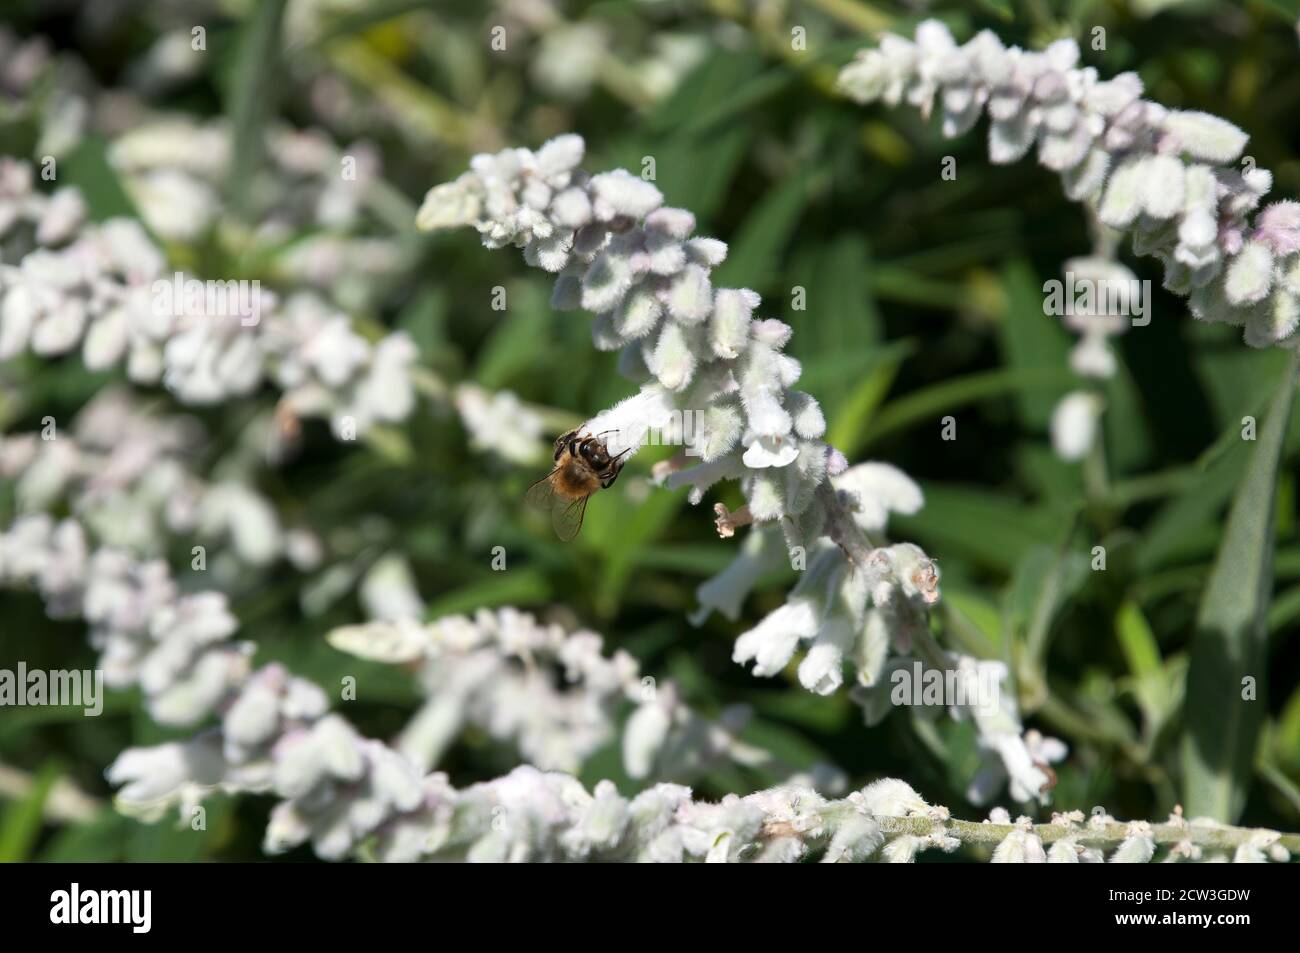 Sydney Australia, bee on a white flower of a Salvia leucantha 'Velour White' Stock Photo